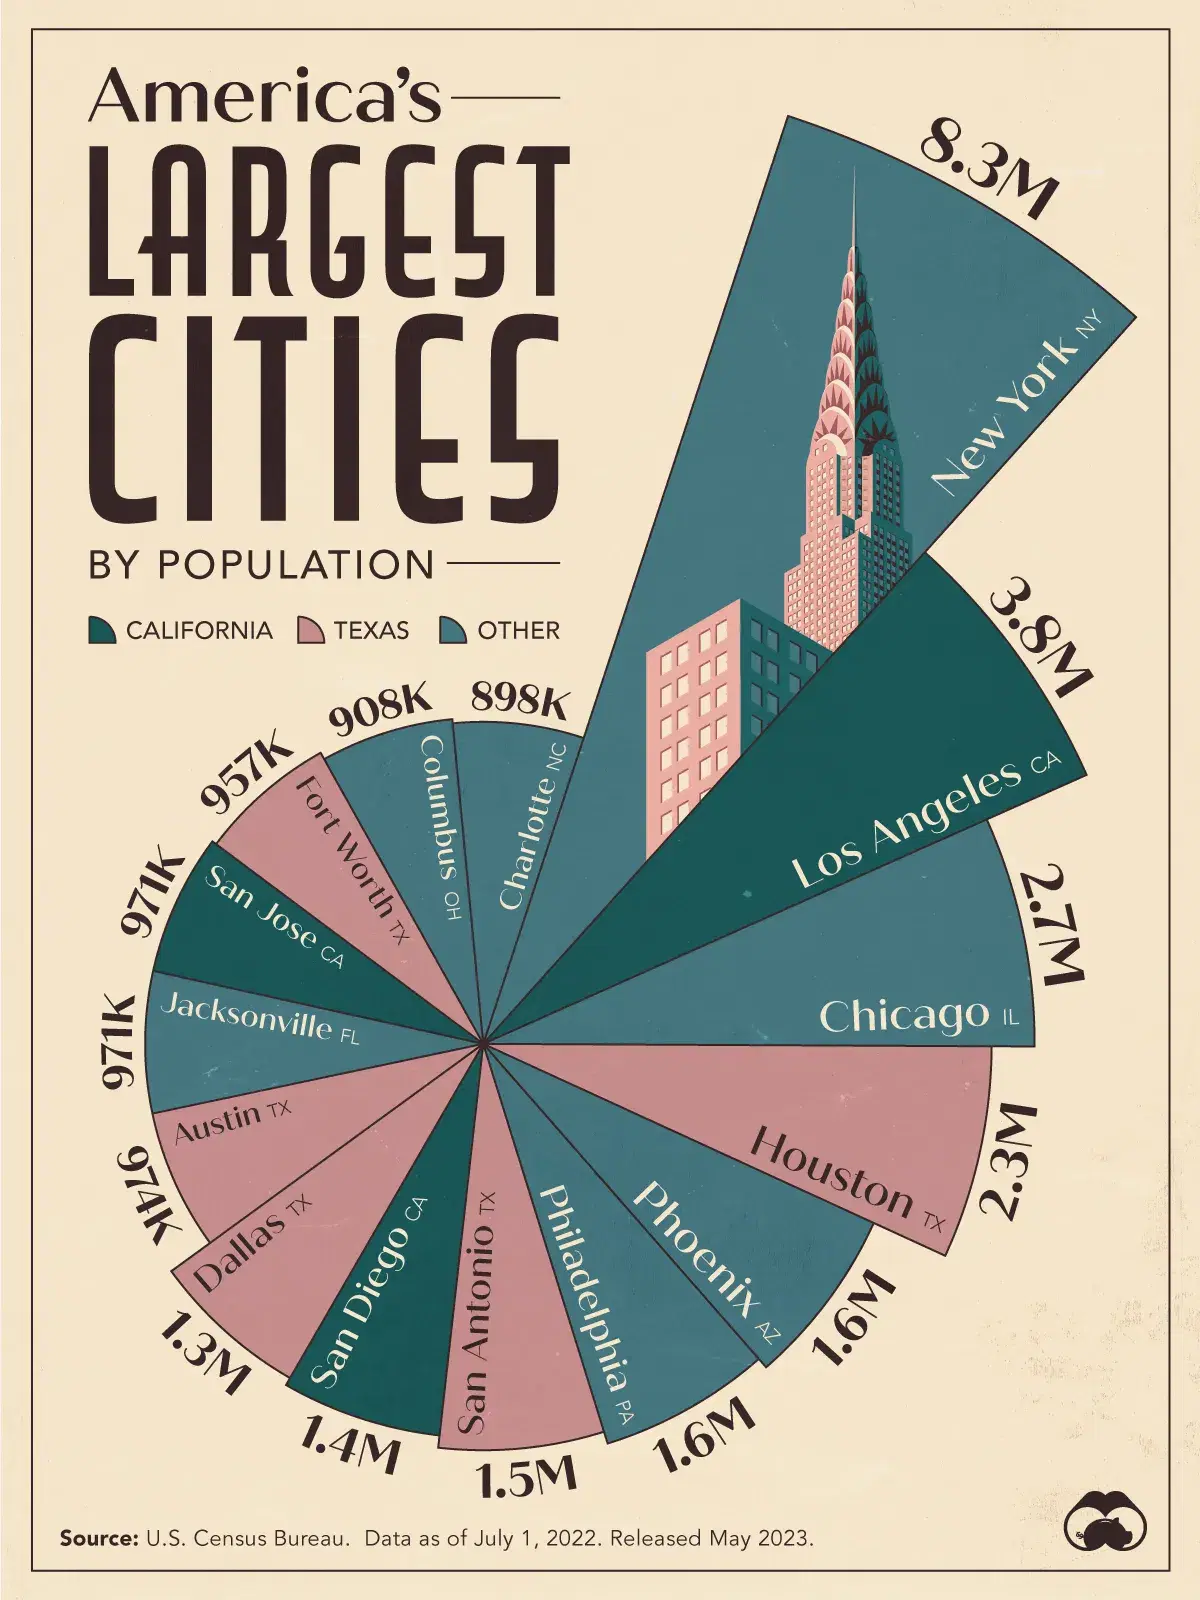 America's Largest Cities, According to U.S. Census Bureau